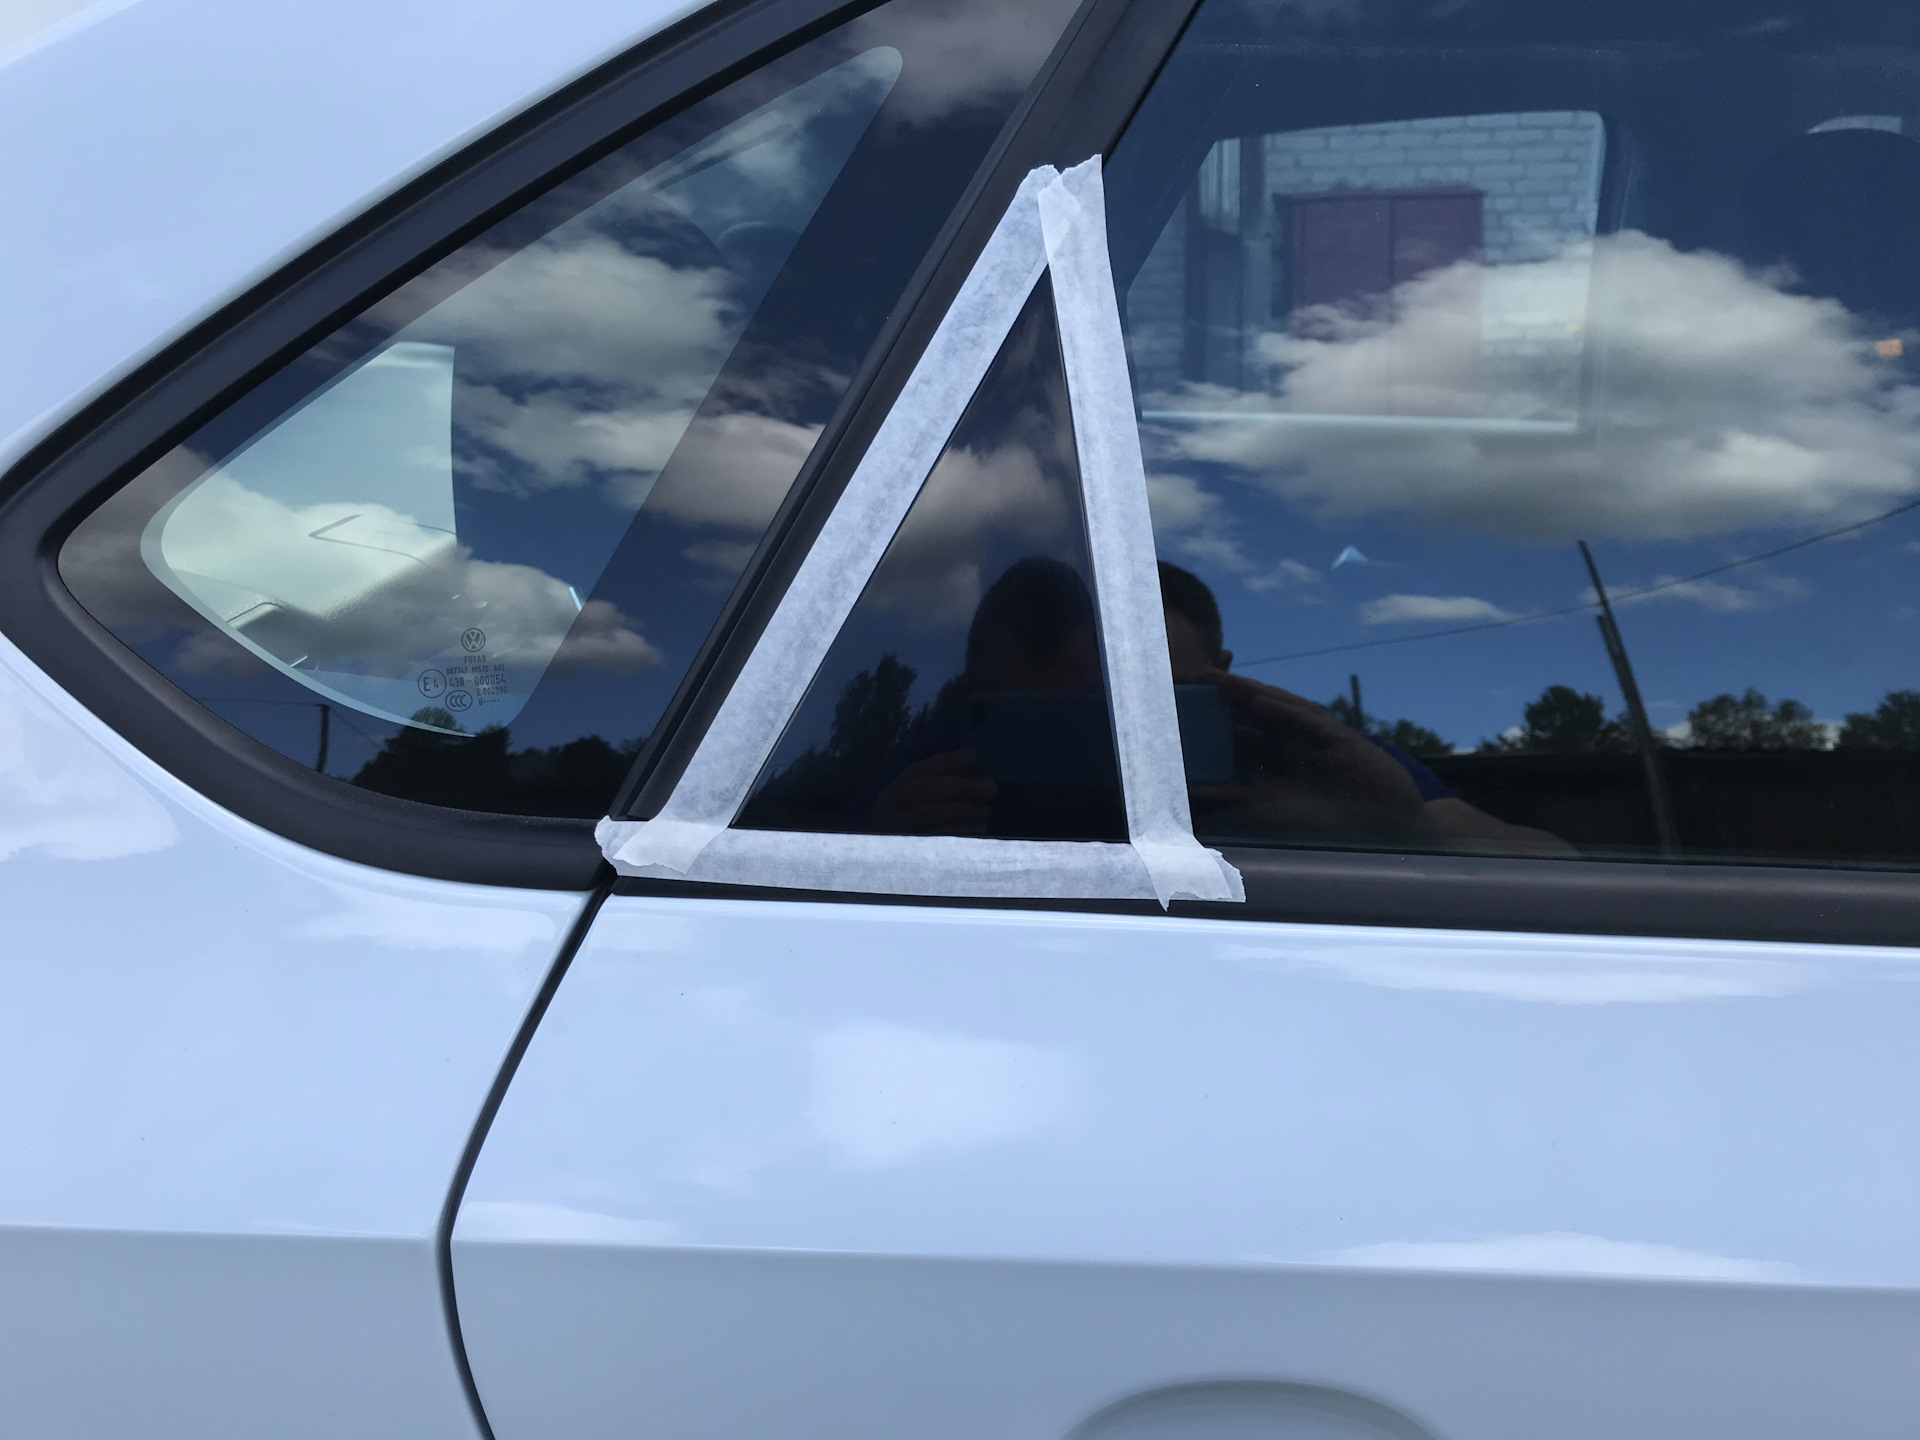 Дверь задняя левая поло седан. VW Polo sedan двойное остекление. Дефлектор дверного окна Фольксваген. Уголки стекол задних. Уголок двери поло седан.